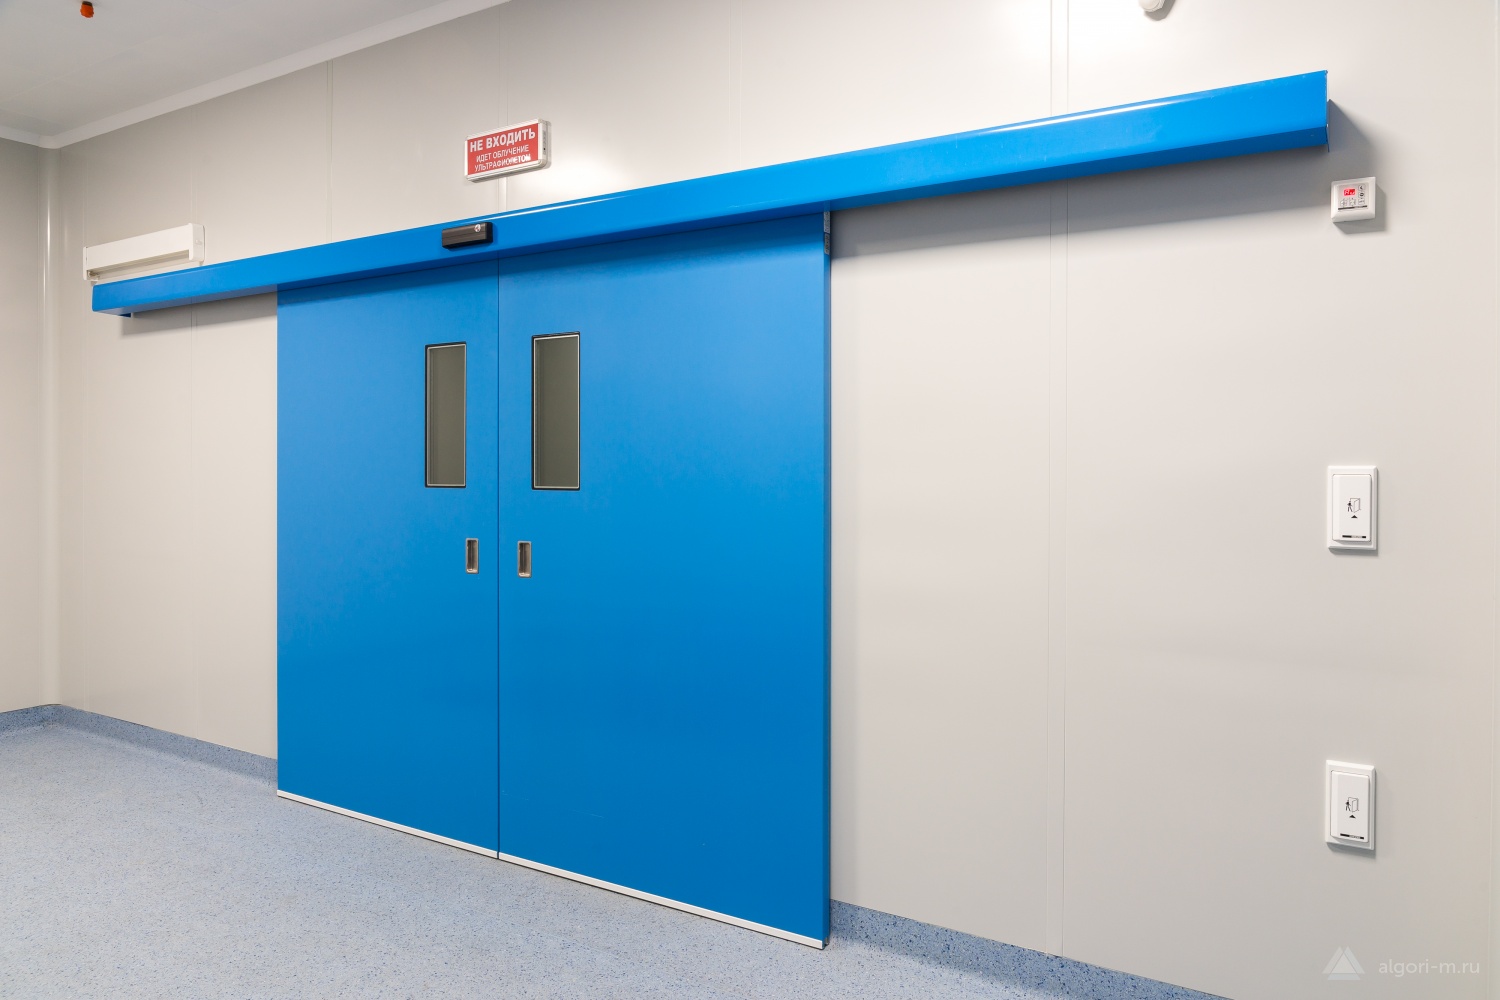 Двери медицинские екатеринбург. Слайдерные двери для чистых помещений. Автоматические двери для чистых помещений. Двери для чистых помещений HPL Medical Group. Медицинские двери для чистых помещений.